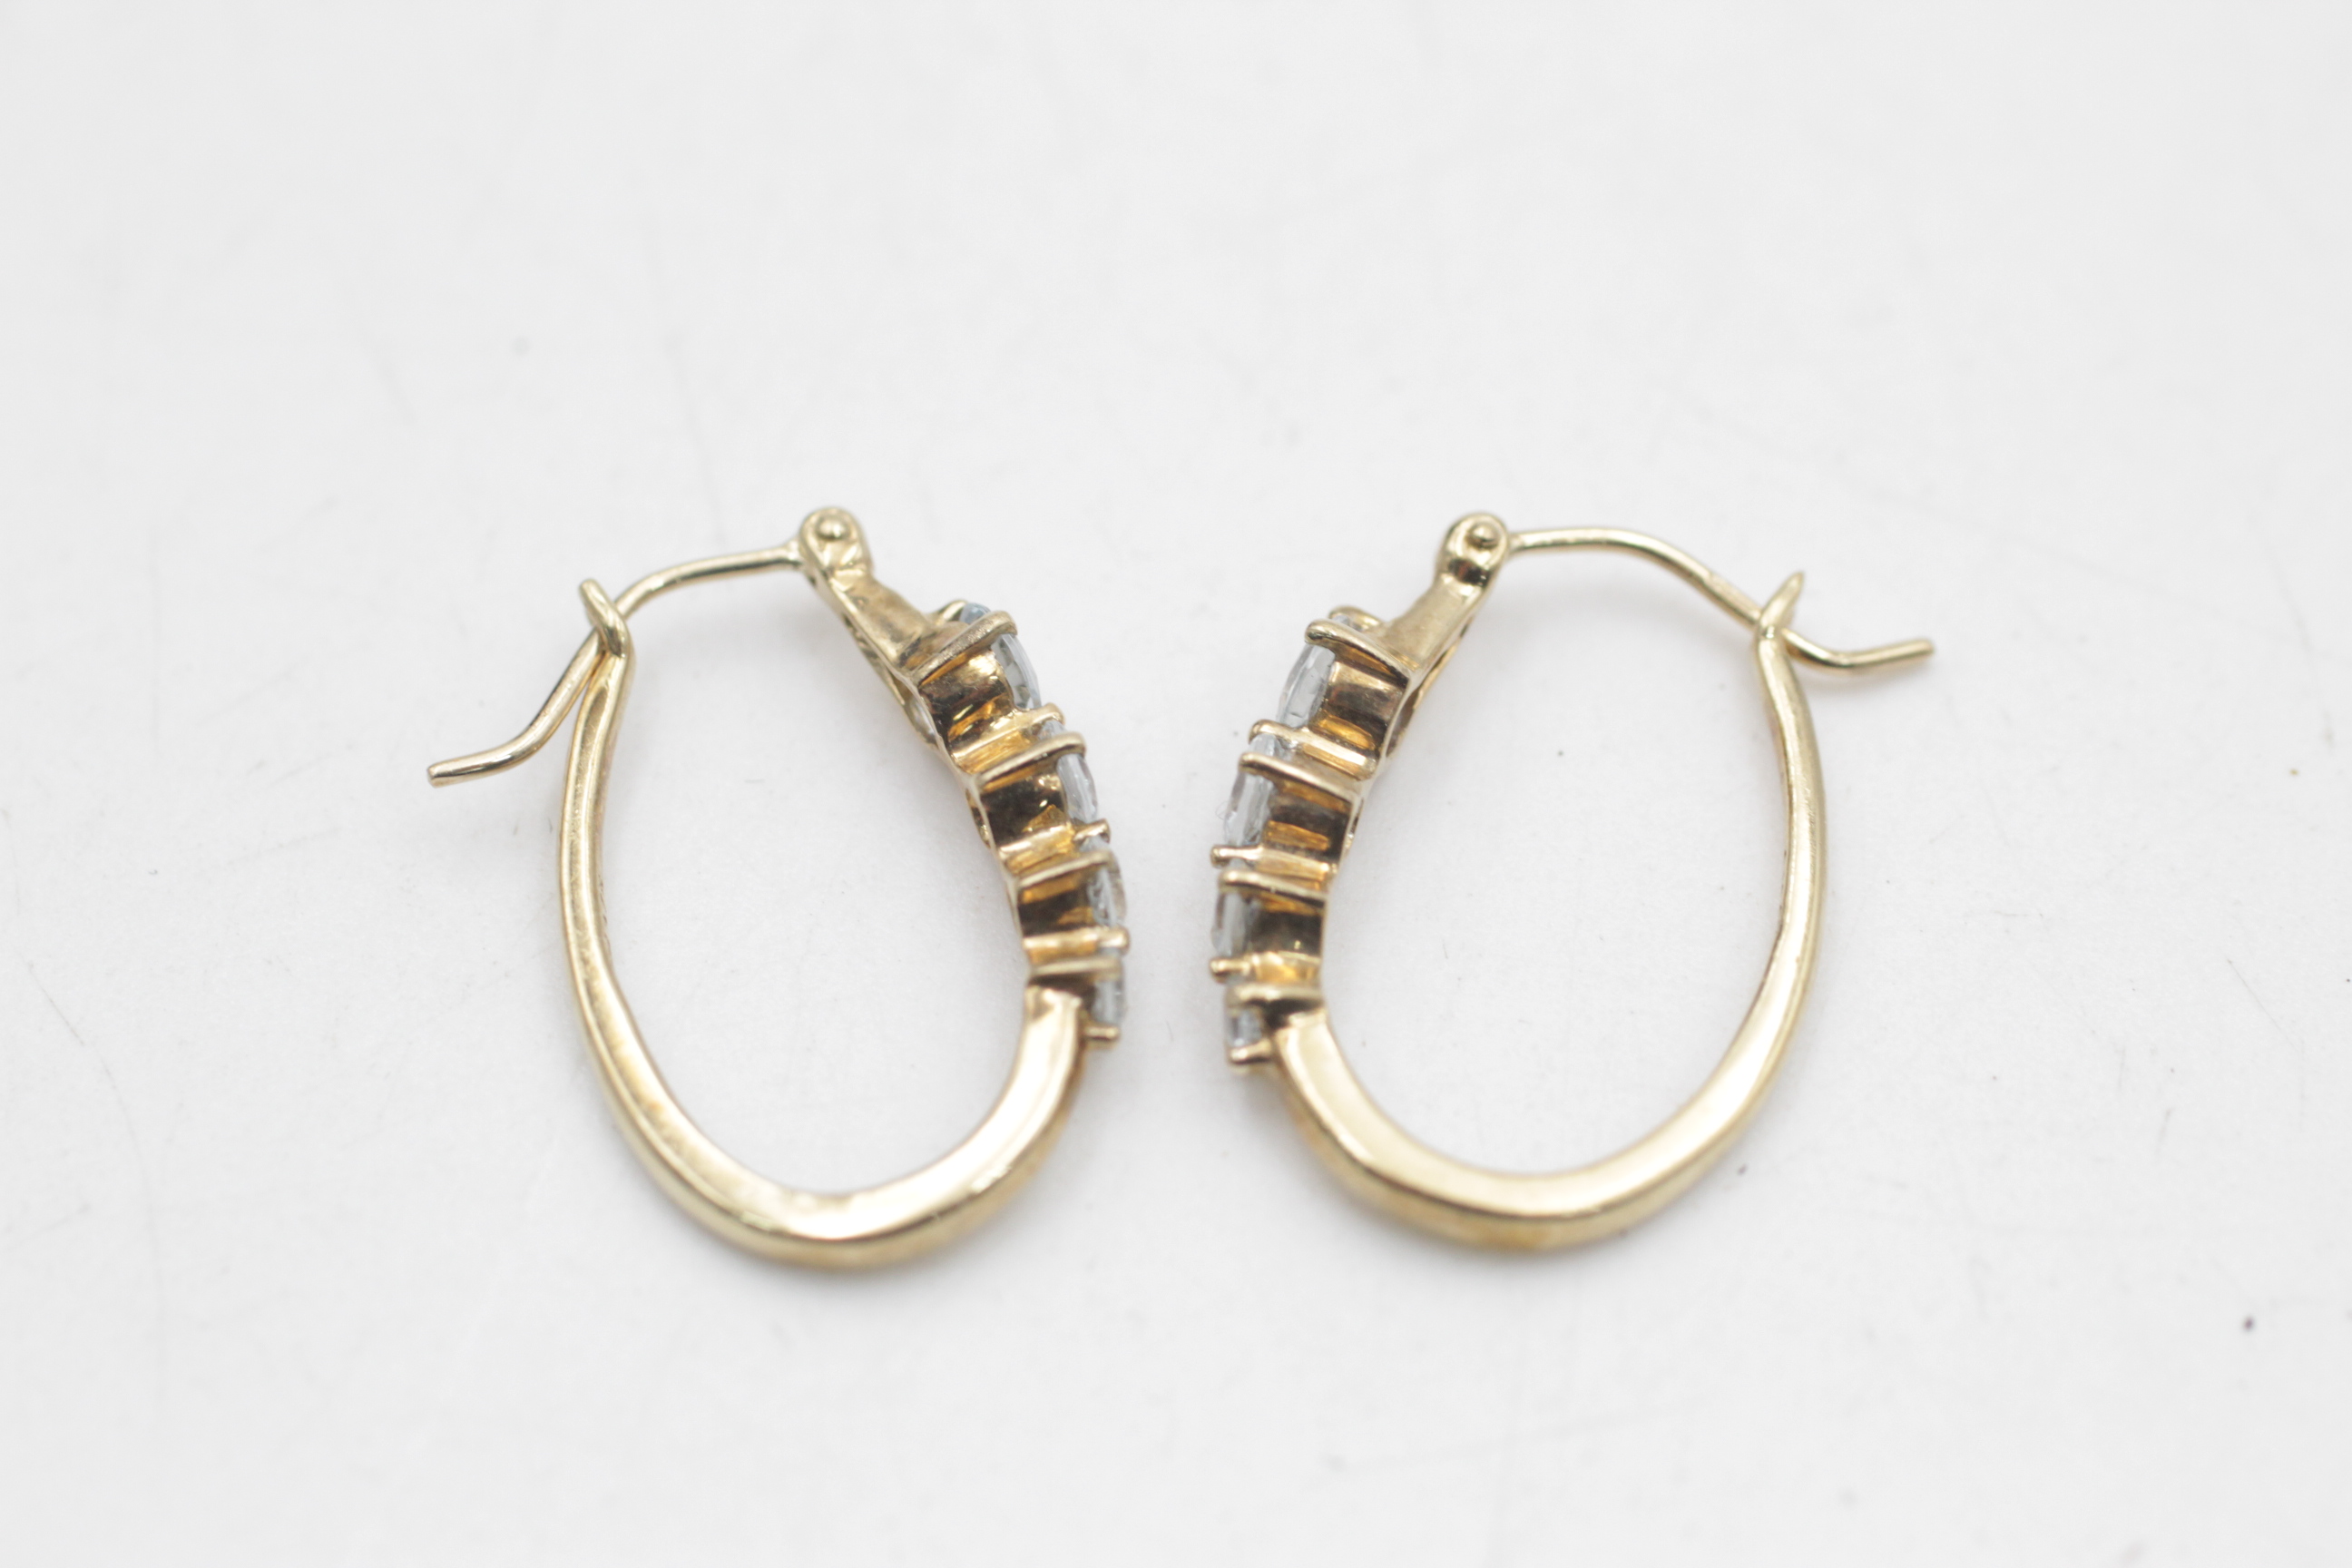 9ct gold vintage aquamarine elongated hoop earrings (2.6g) - Image 3 of 4